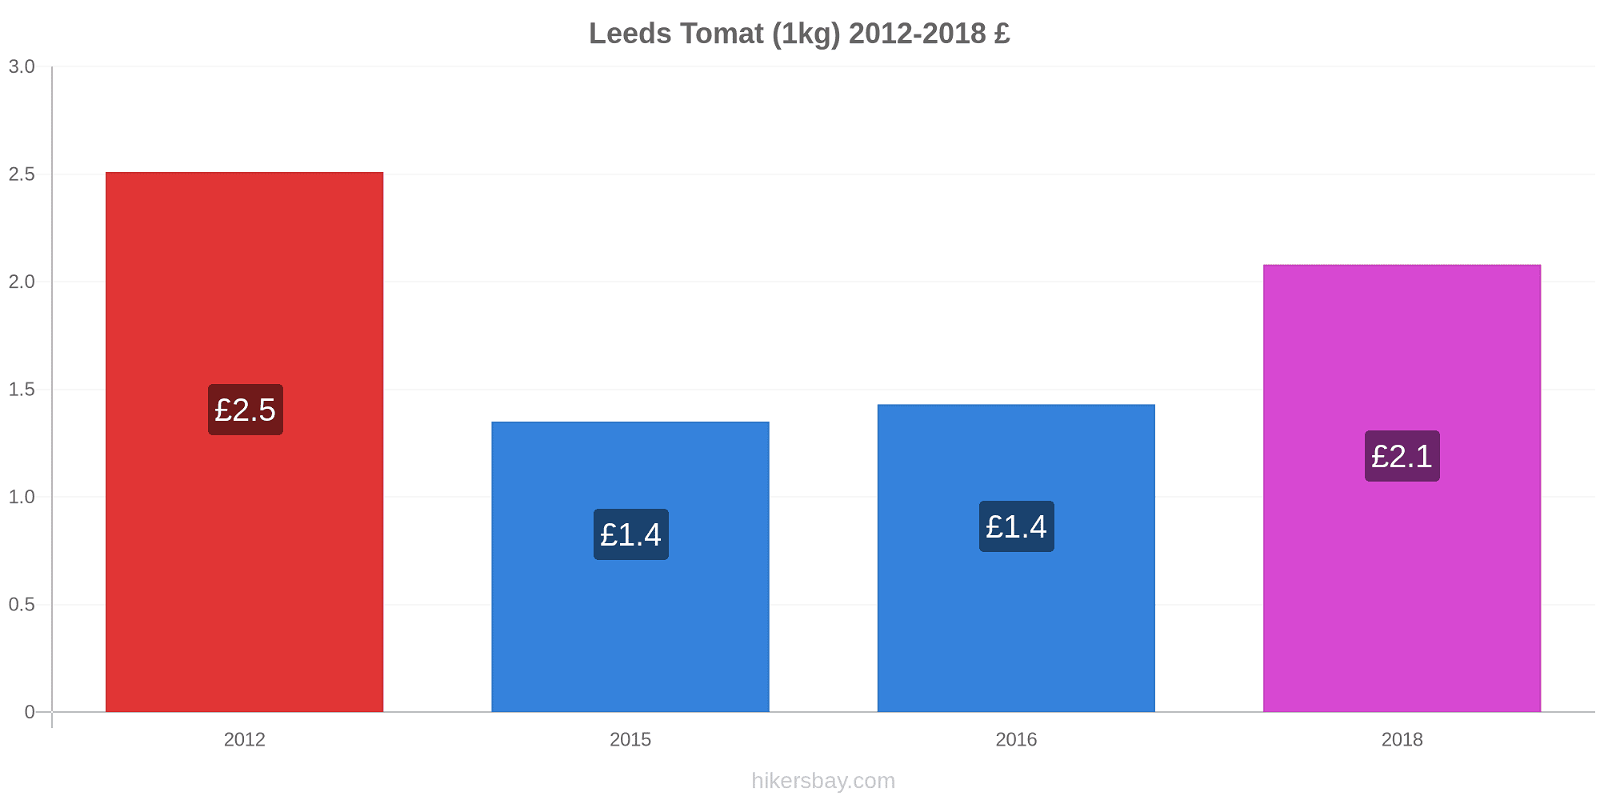 Leeds prisendringer Tomat (1kg) hikersbay.com